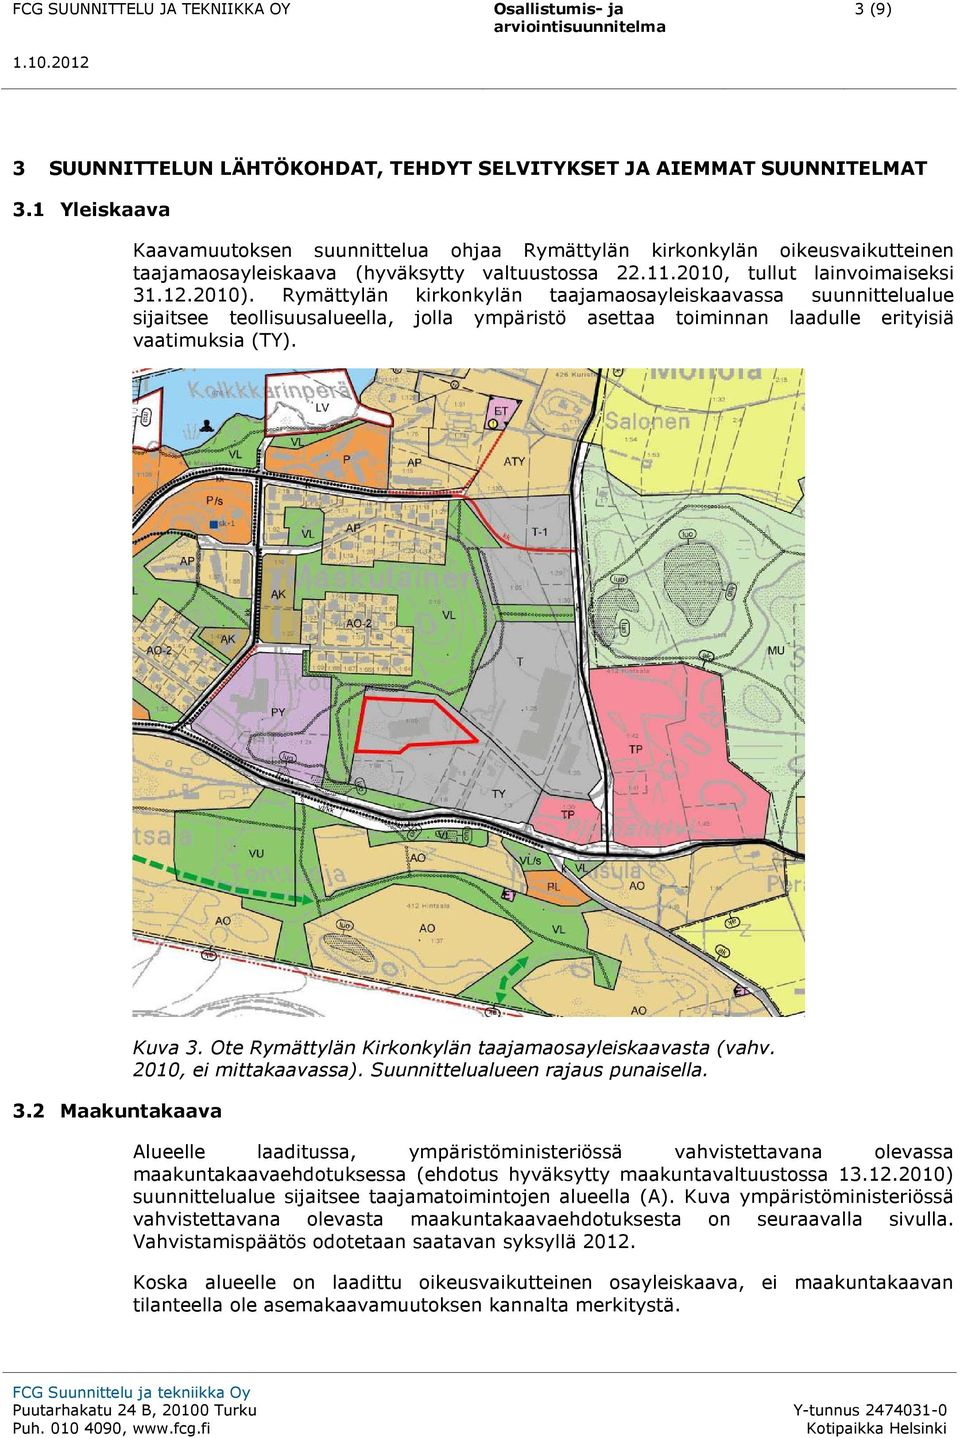 Rymättylän kirkonkylän taajamaosayleiskaavassa suunnittelualue sijaitsee teollisuusalueella, jolla ympäristö asettaa toiminnan laadulle erityisiä vaatimuksia (TY). 3.2 Maakuntakaava Kuva 3.